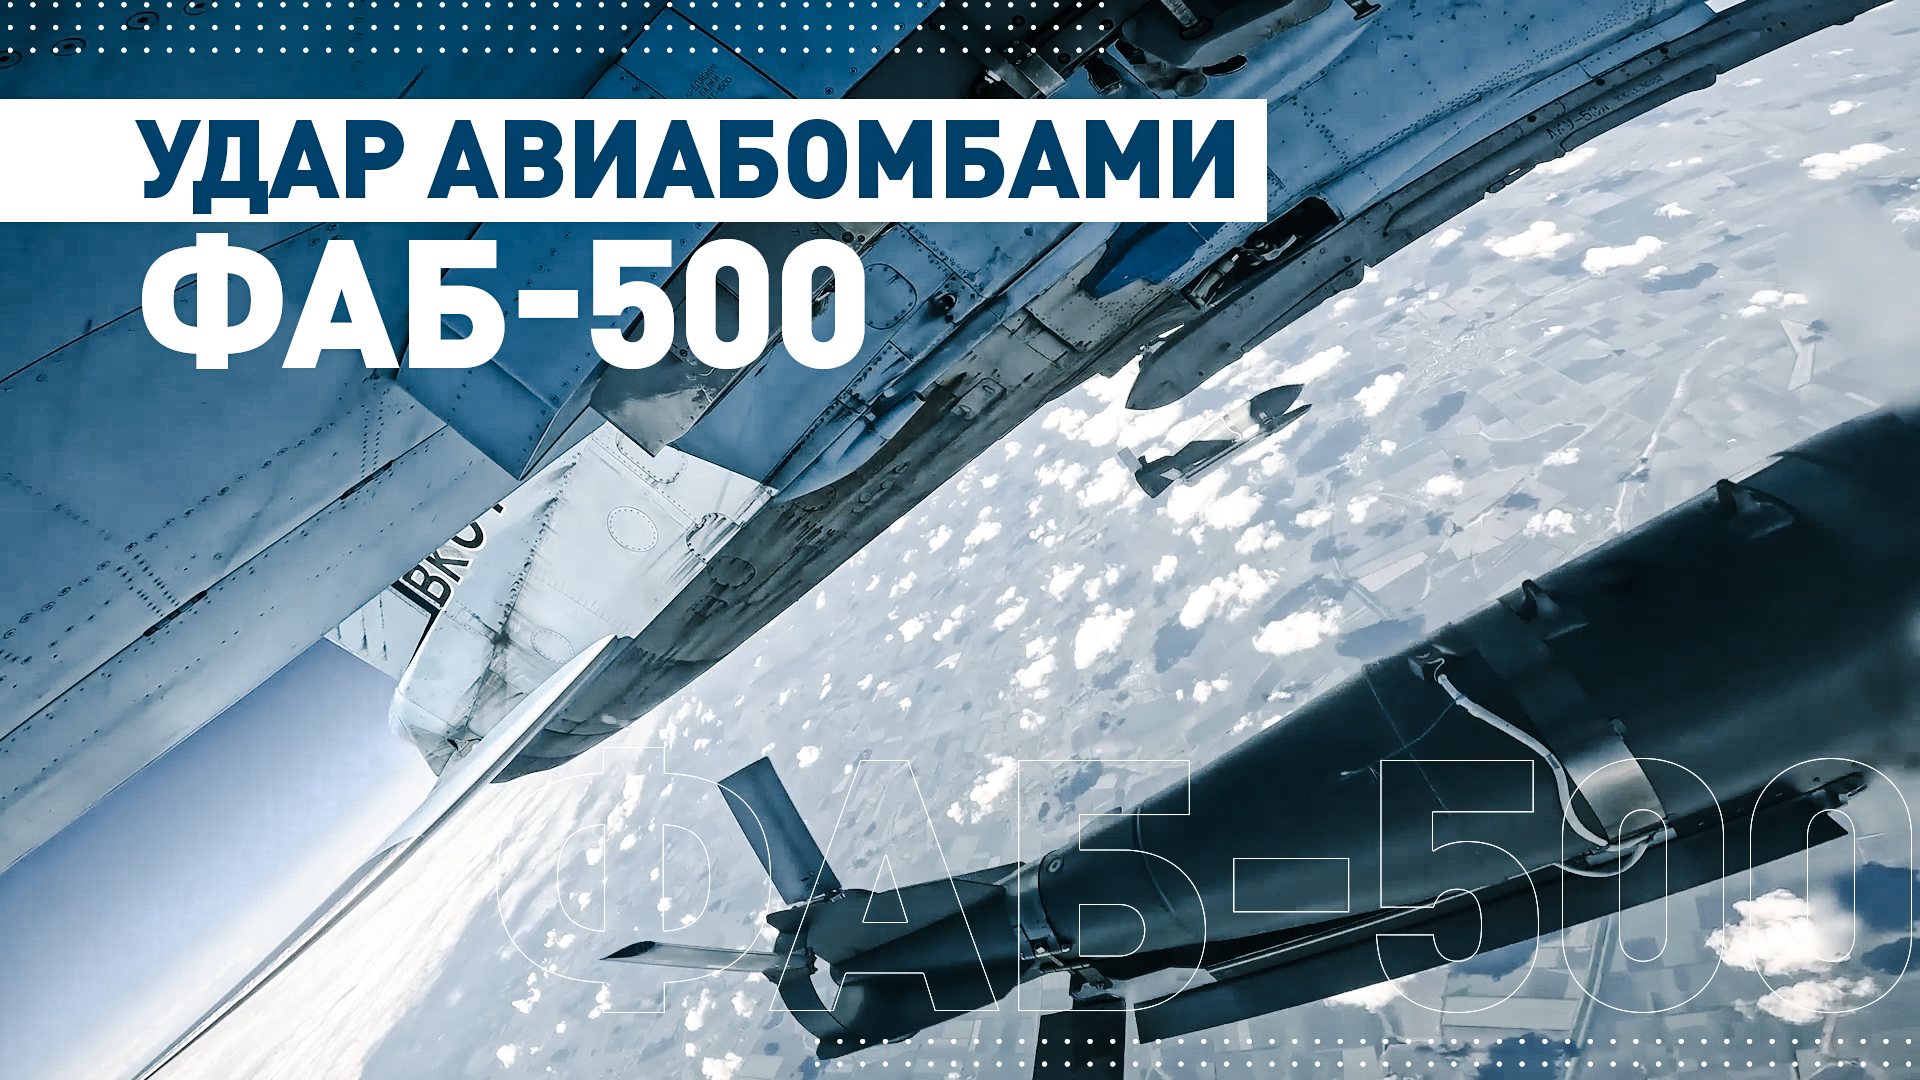 Экипажи Су-34 нанесли удар по опорному пункту ВСУ авиабомбами ФАБ-500